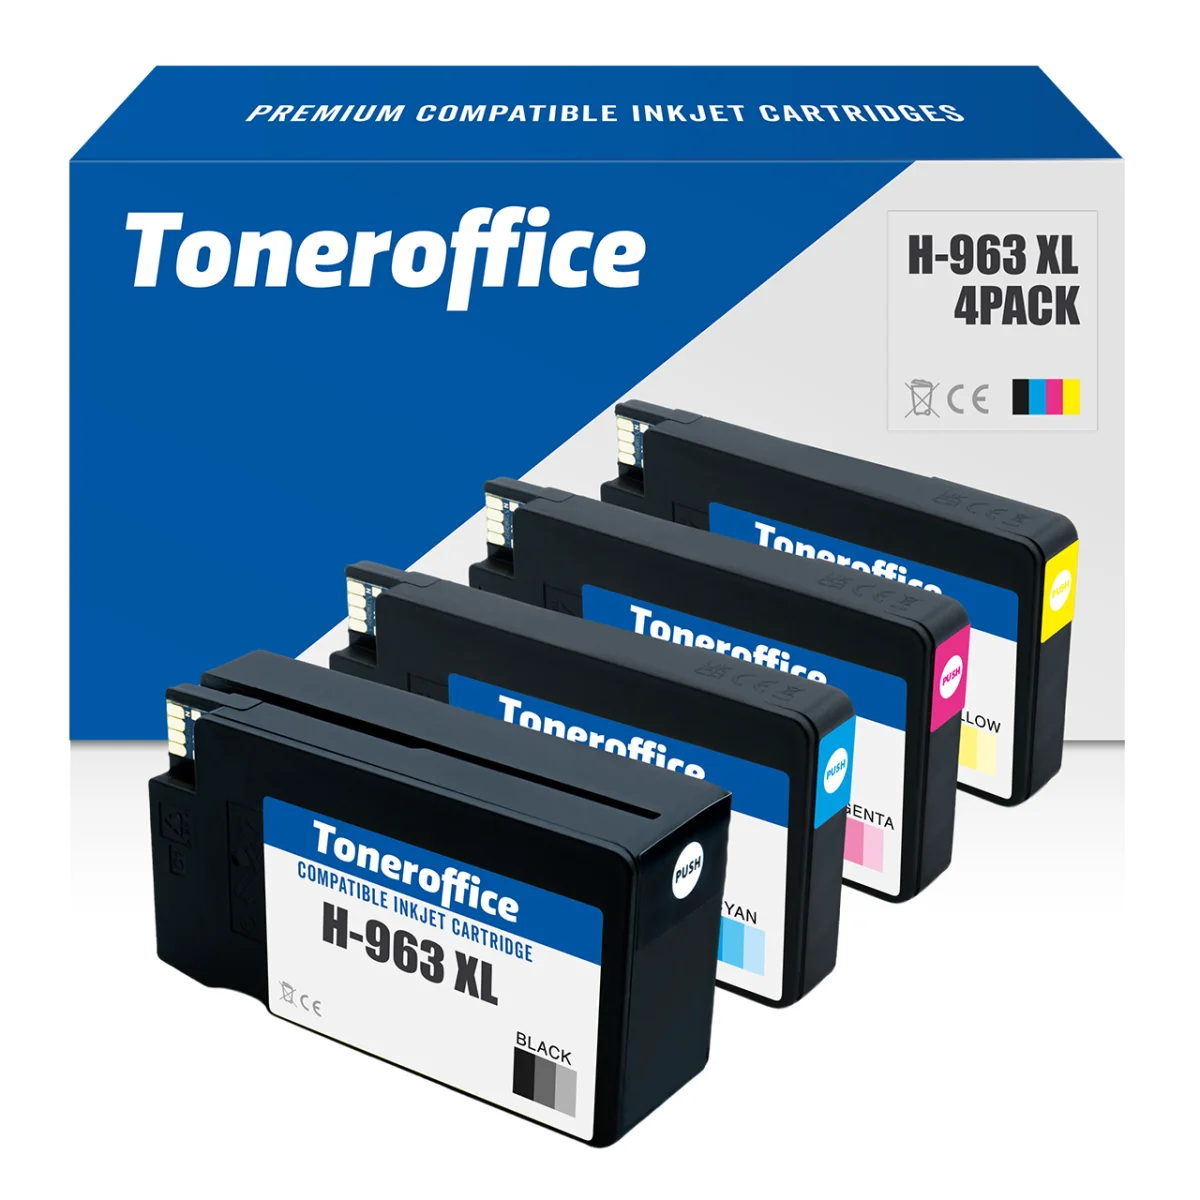 HP 963 XL und HP 912 XL Druckerpatronen kompatibel ab sofort im Toneroffice Shop verfügbar 